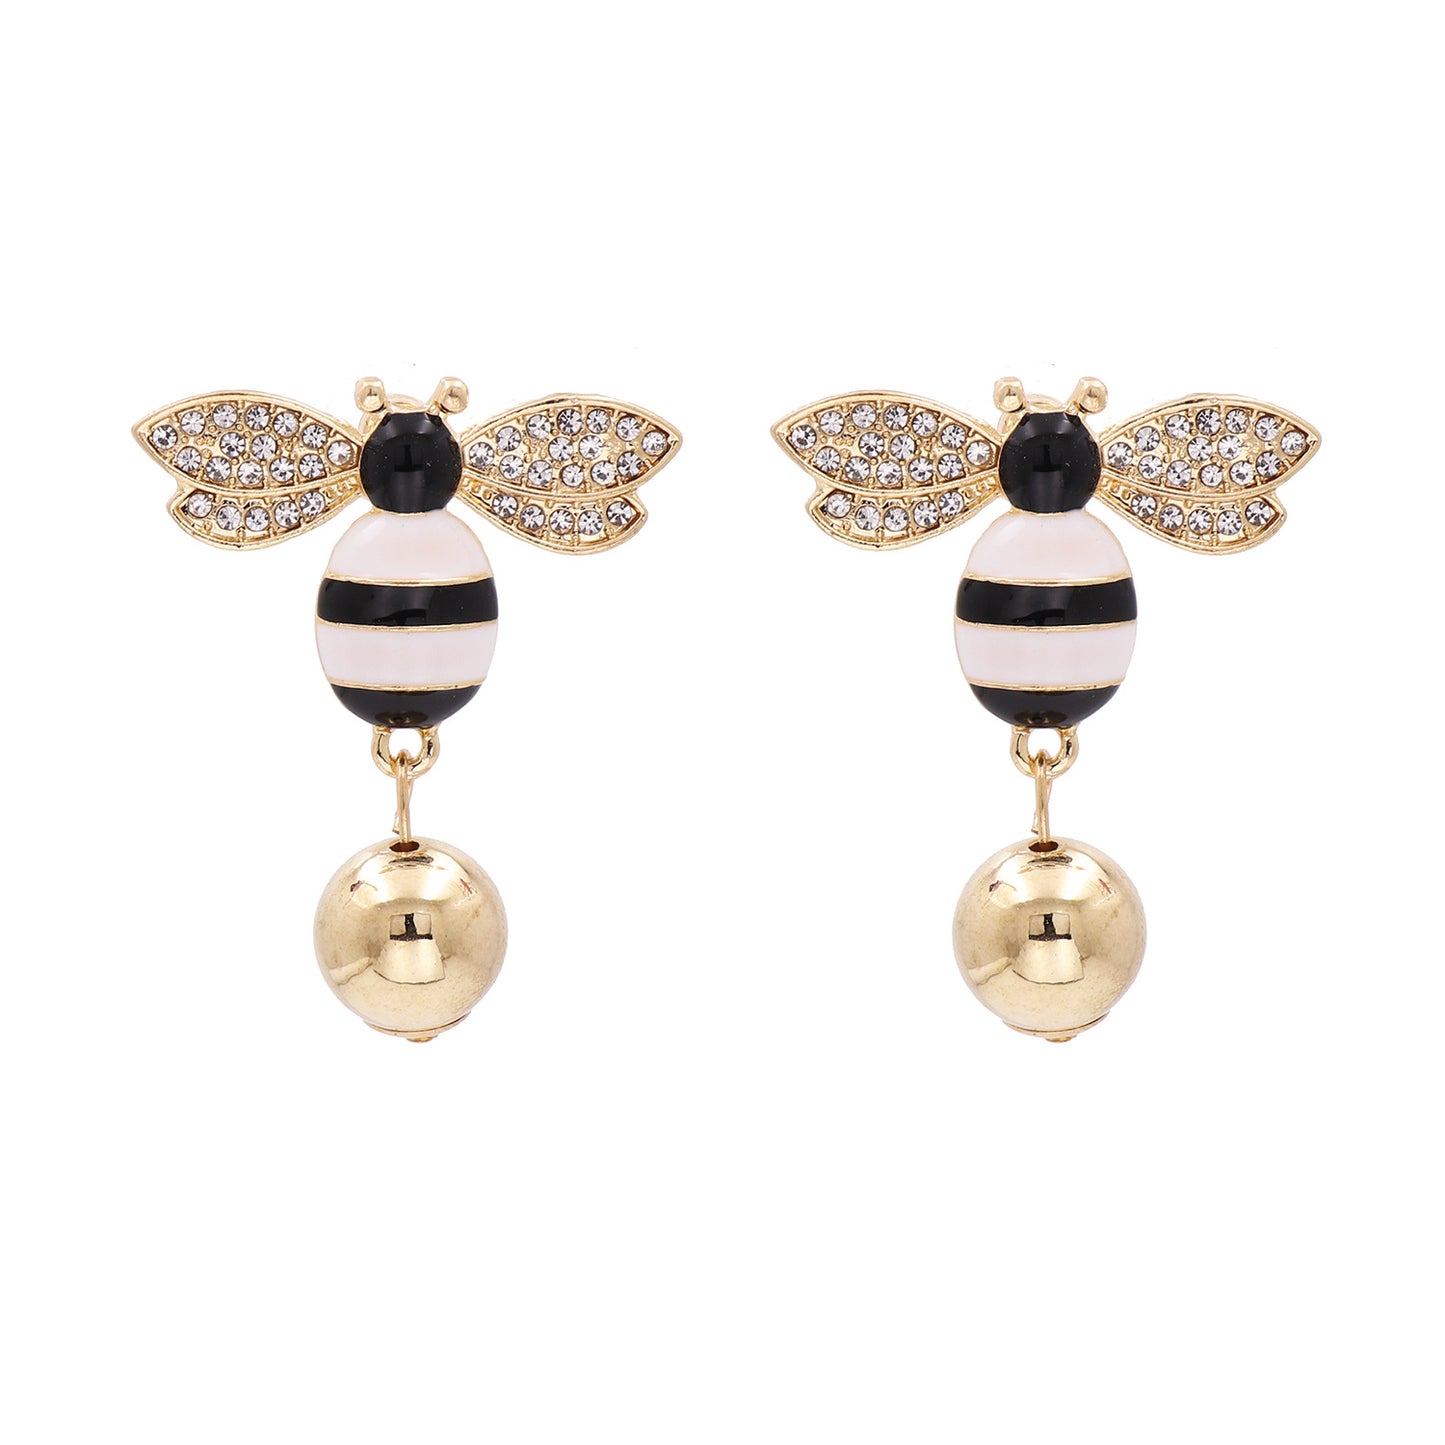 Hot Sales New Symmetrical Earrings Bee Pearl Earrings Ear Jewelry Insect Earrings Korea Wholesale Gooddiy